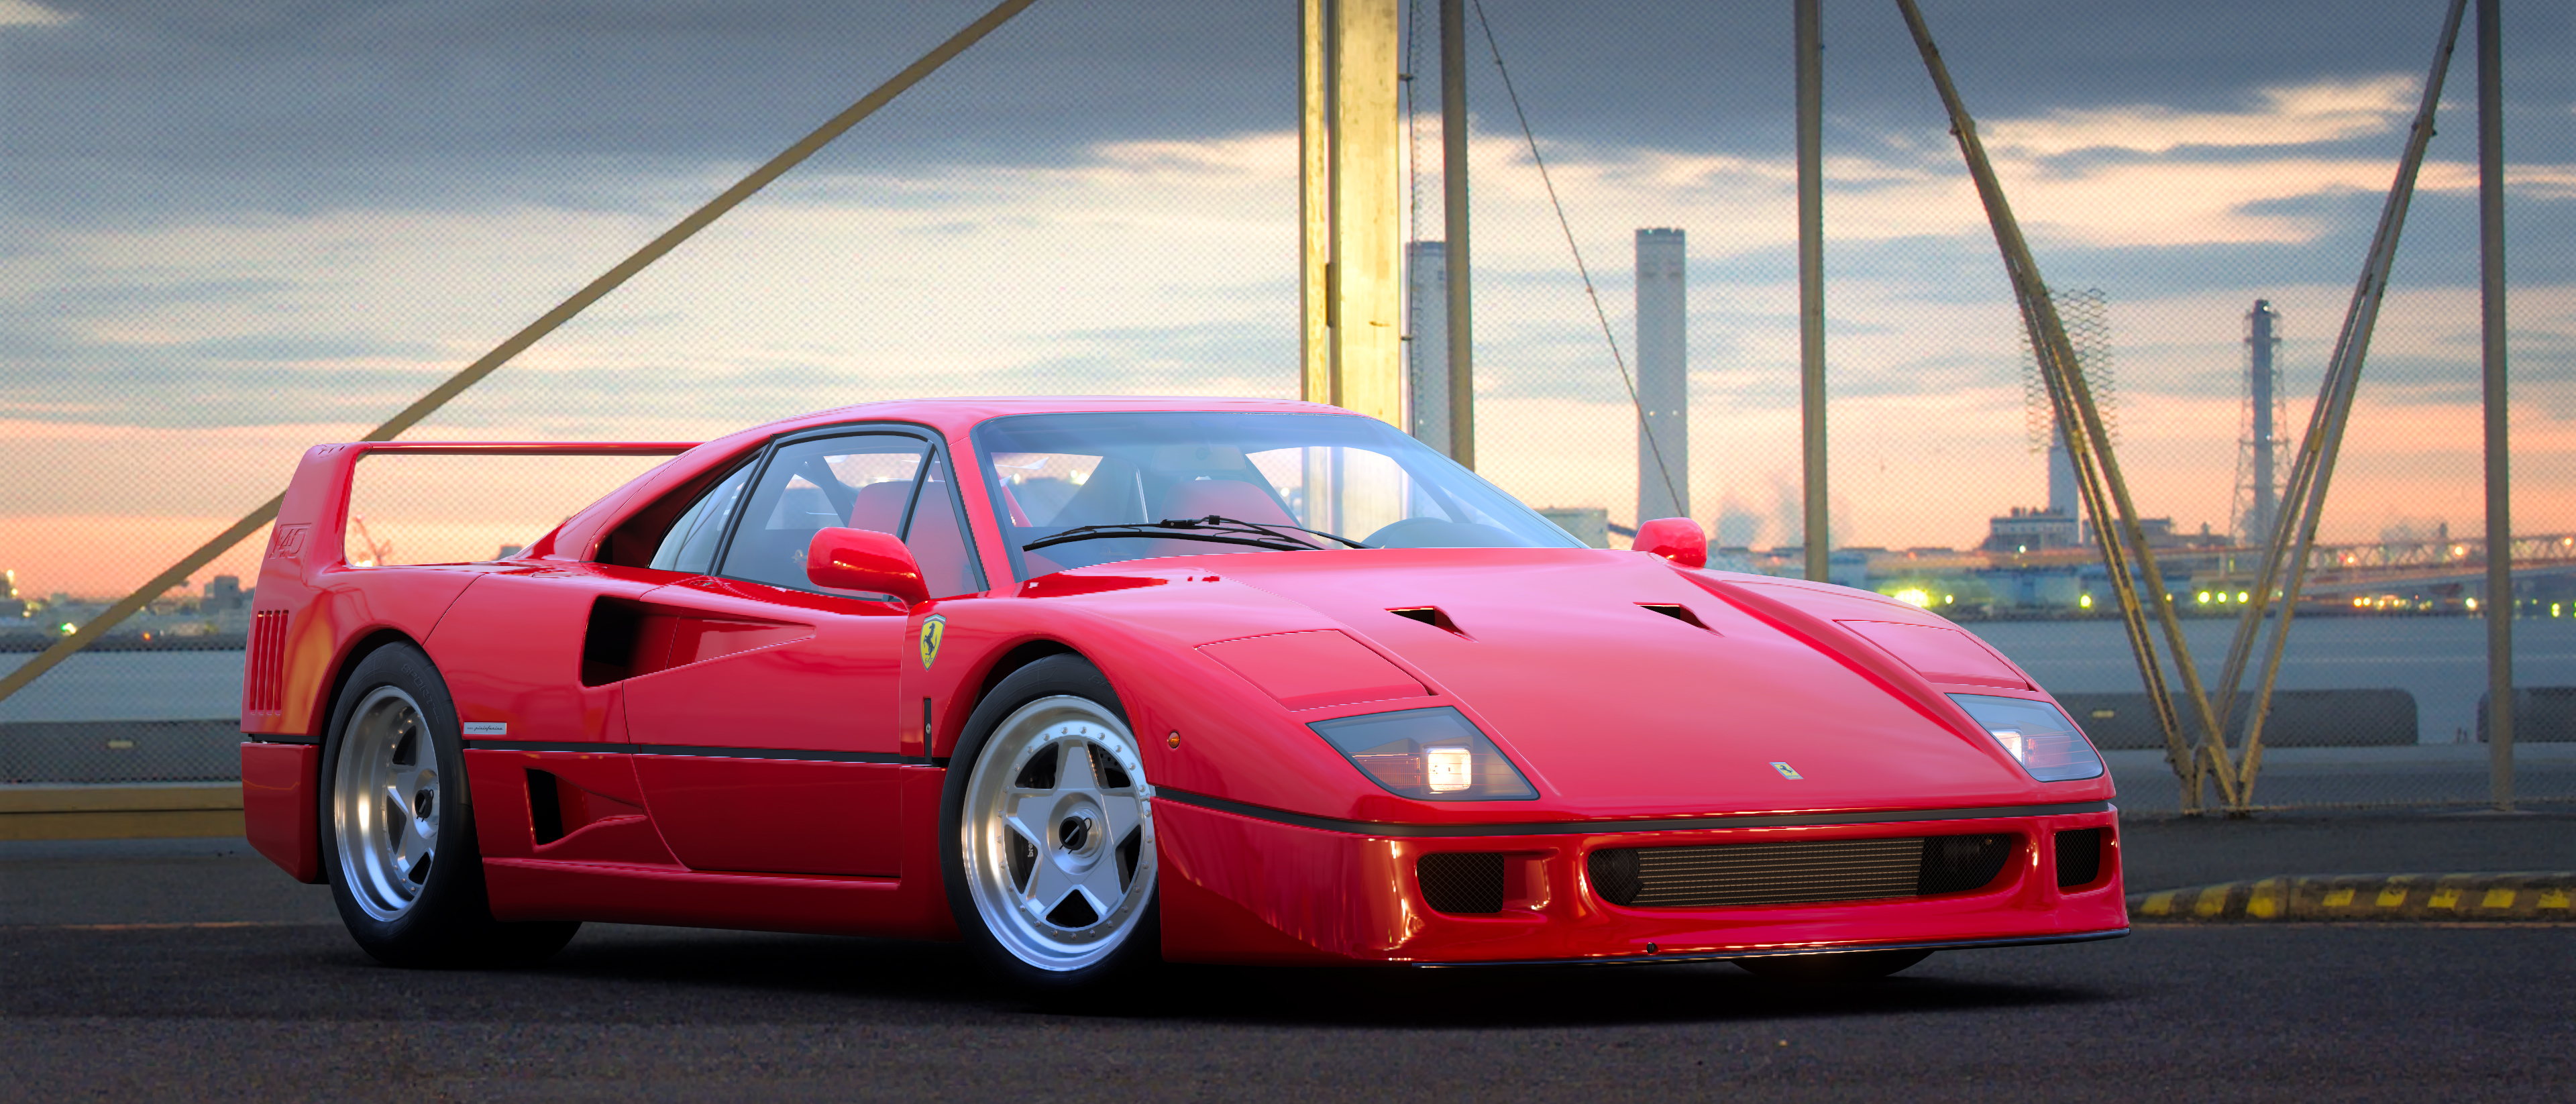 A Ferrari F40 показан в фоторежиме Scapes в Gran Turismo 7